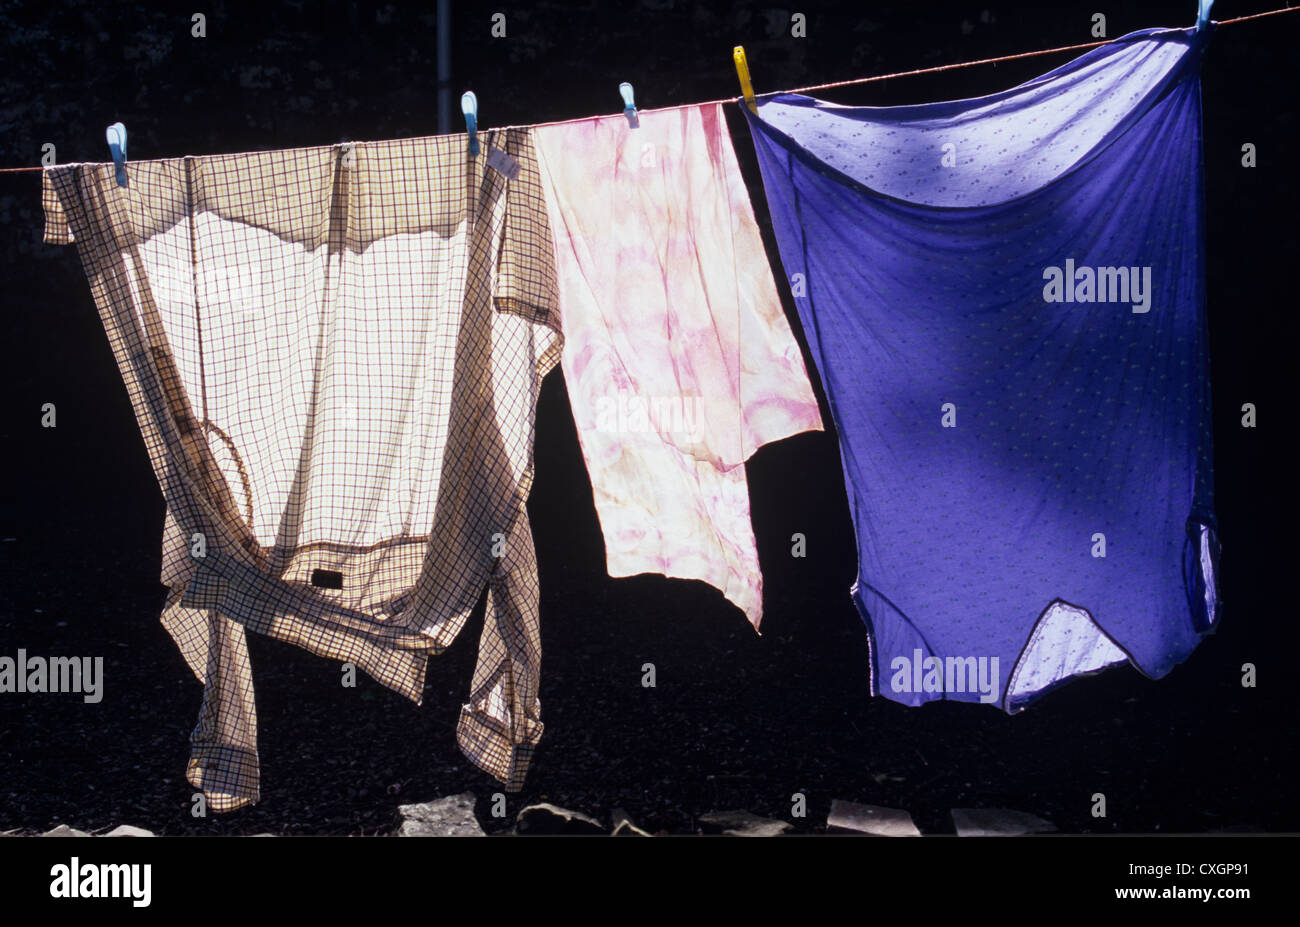 Maglietta e sciarpa e nightshirt appesi ad asciugare sul lavaggio-riga retroilluminato luminosamente contro il muro oscuro Foto Stock